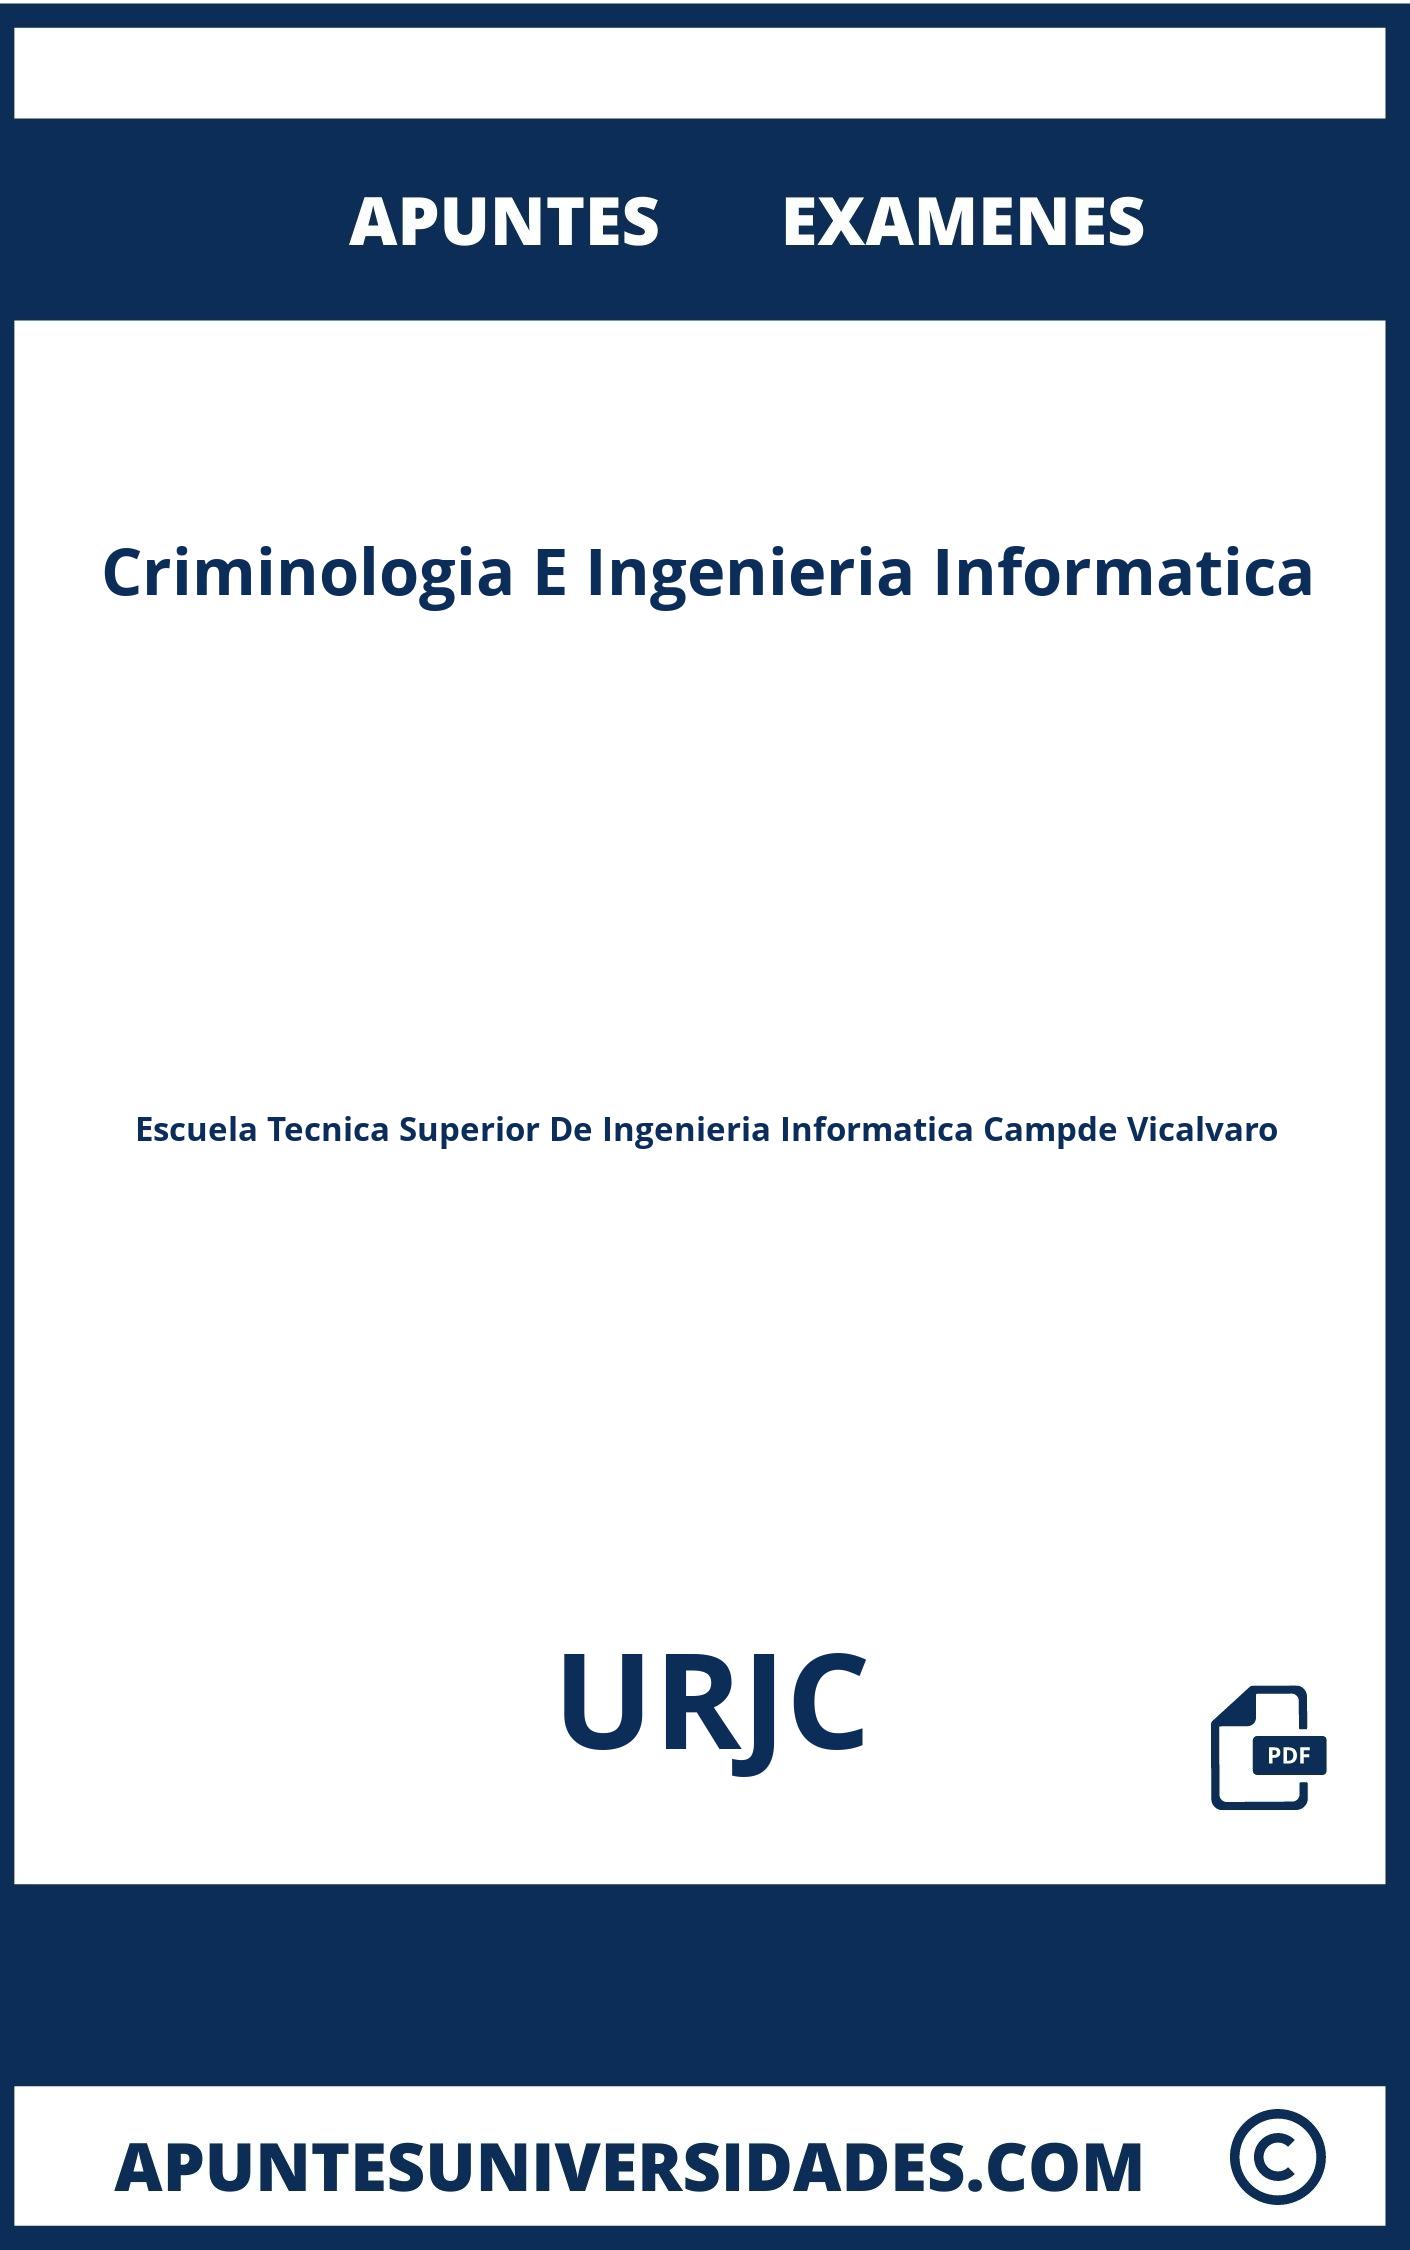 Apuntes Examenes Criminologia E Ingenieria Informatica URJC